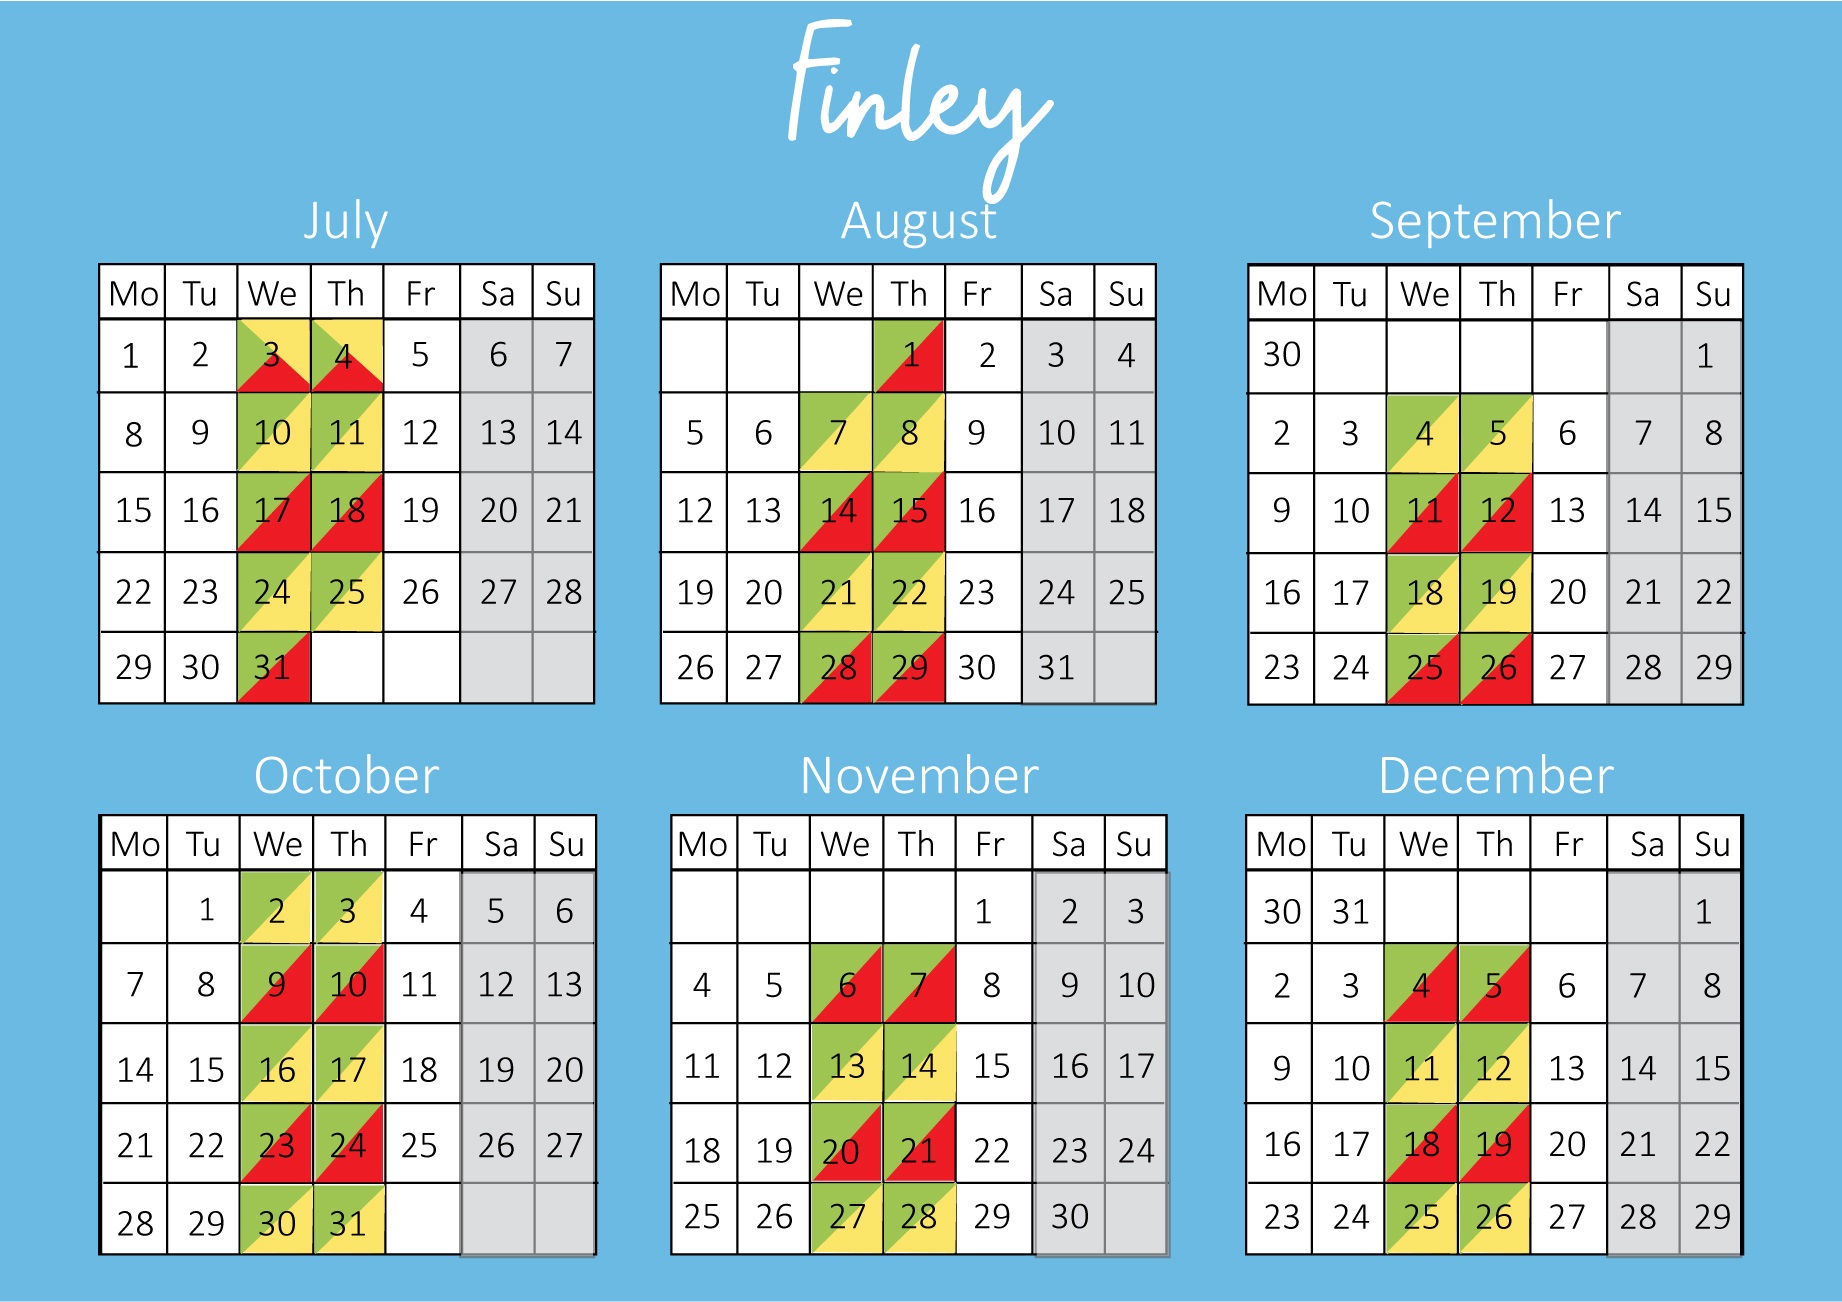 Bin-Calendar-Finley.jpg